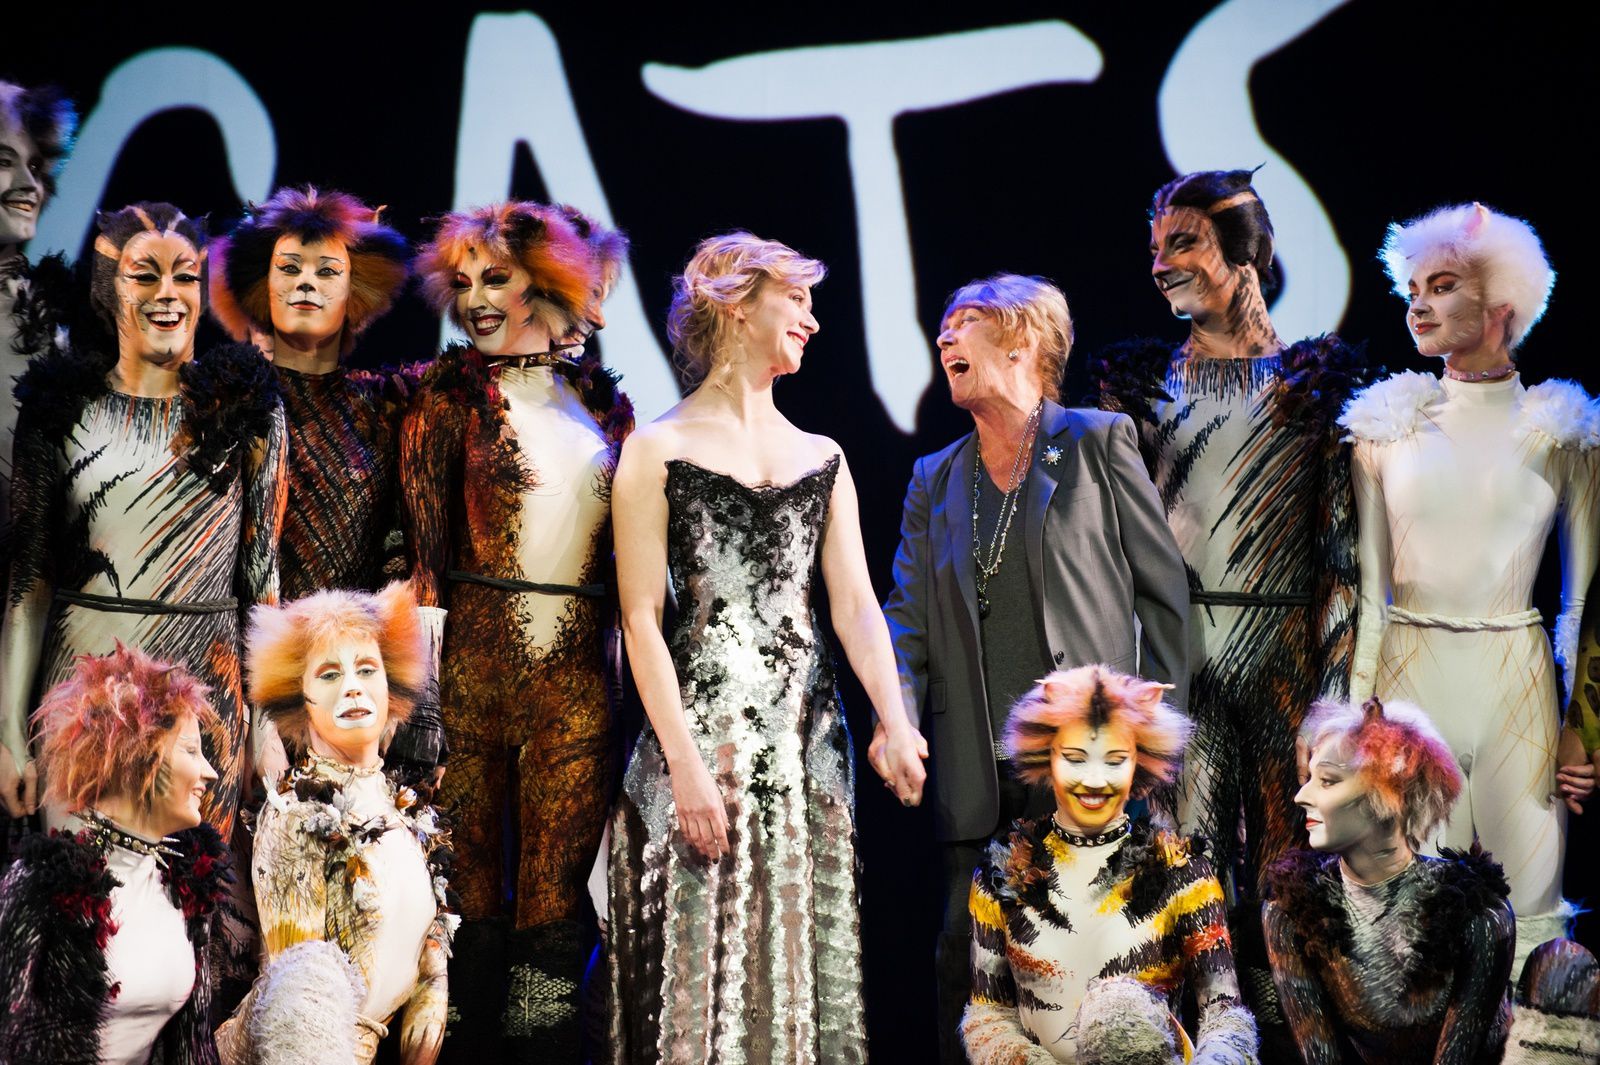  Le musical Cats bientôt sur Paris